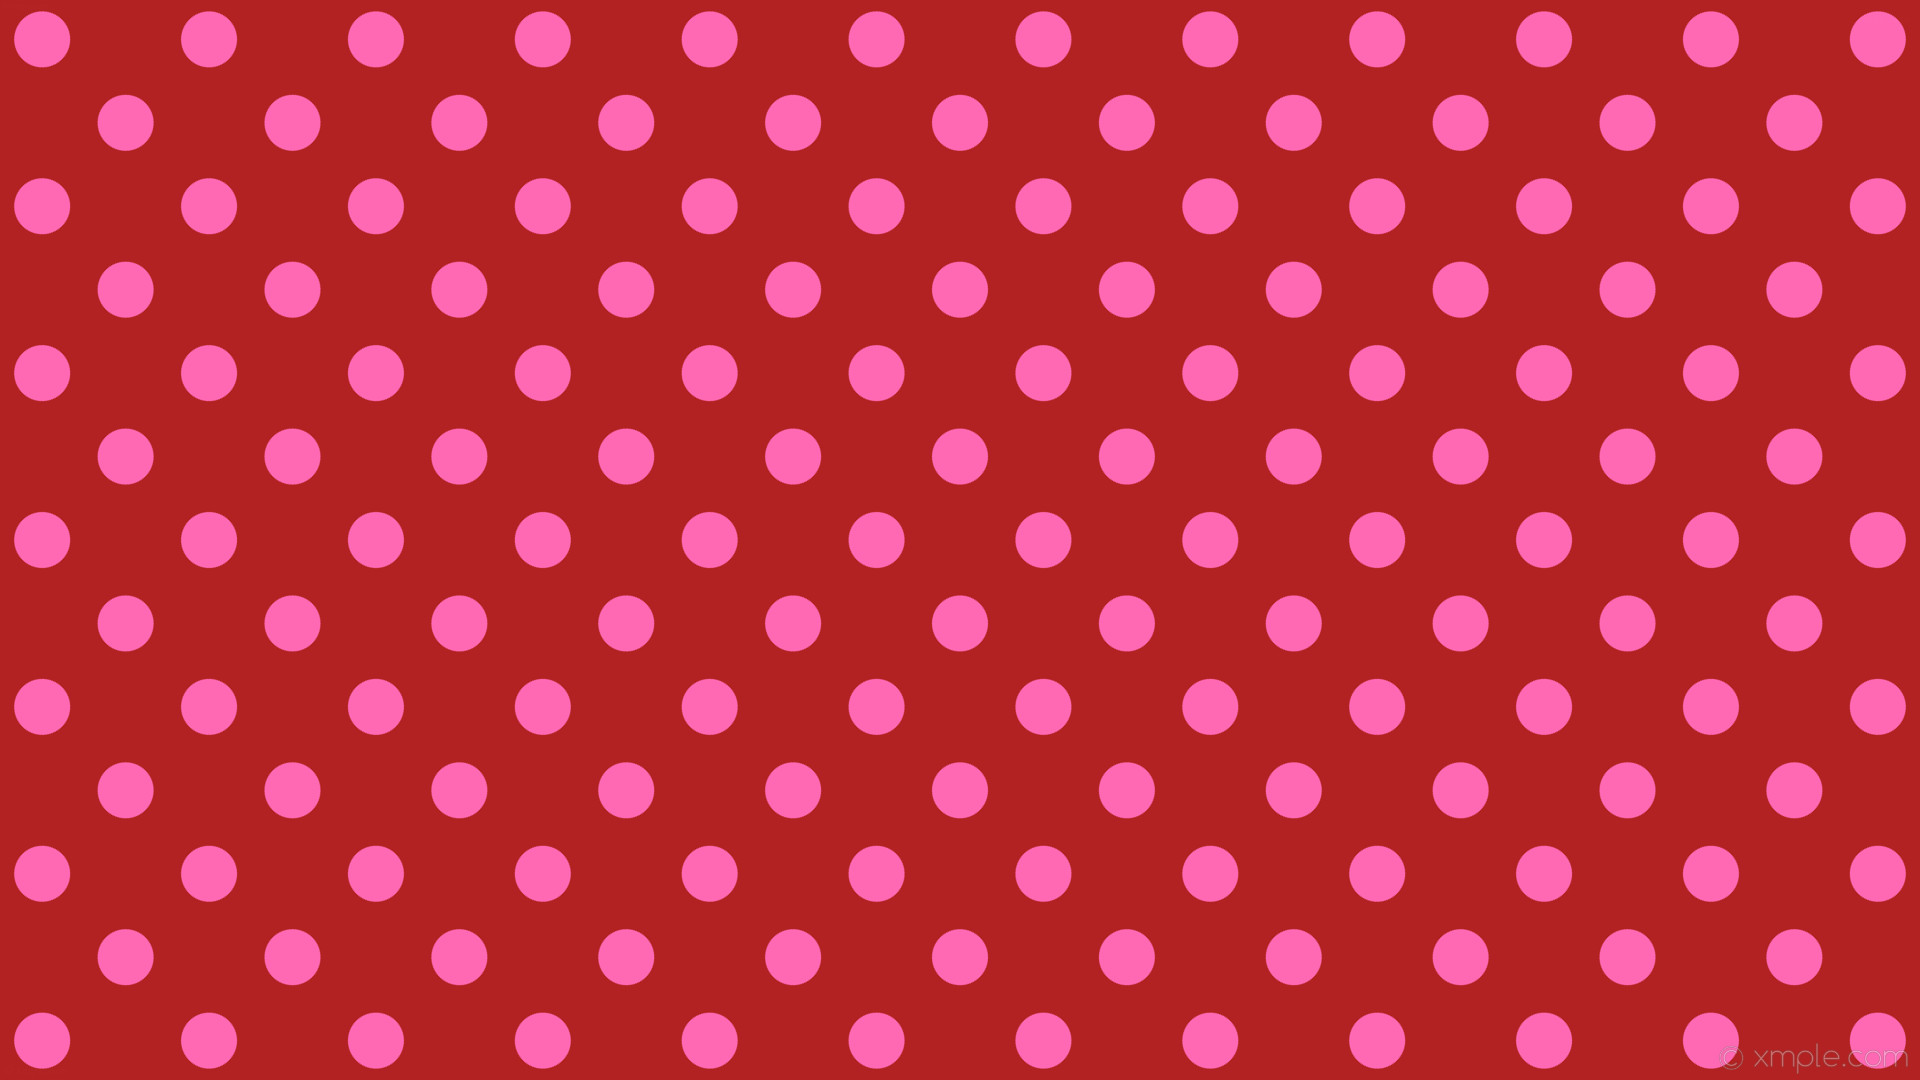 1920x1080 wallpaper pink polka dots spots red fire brick hot pink #b22222 #ff69b4 225Â°